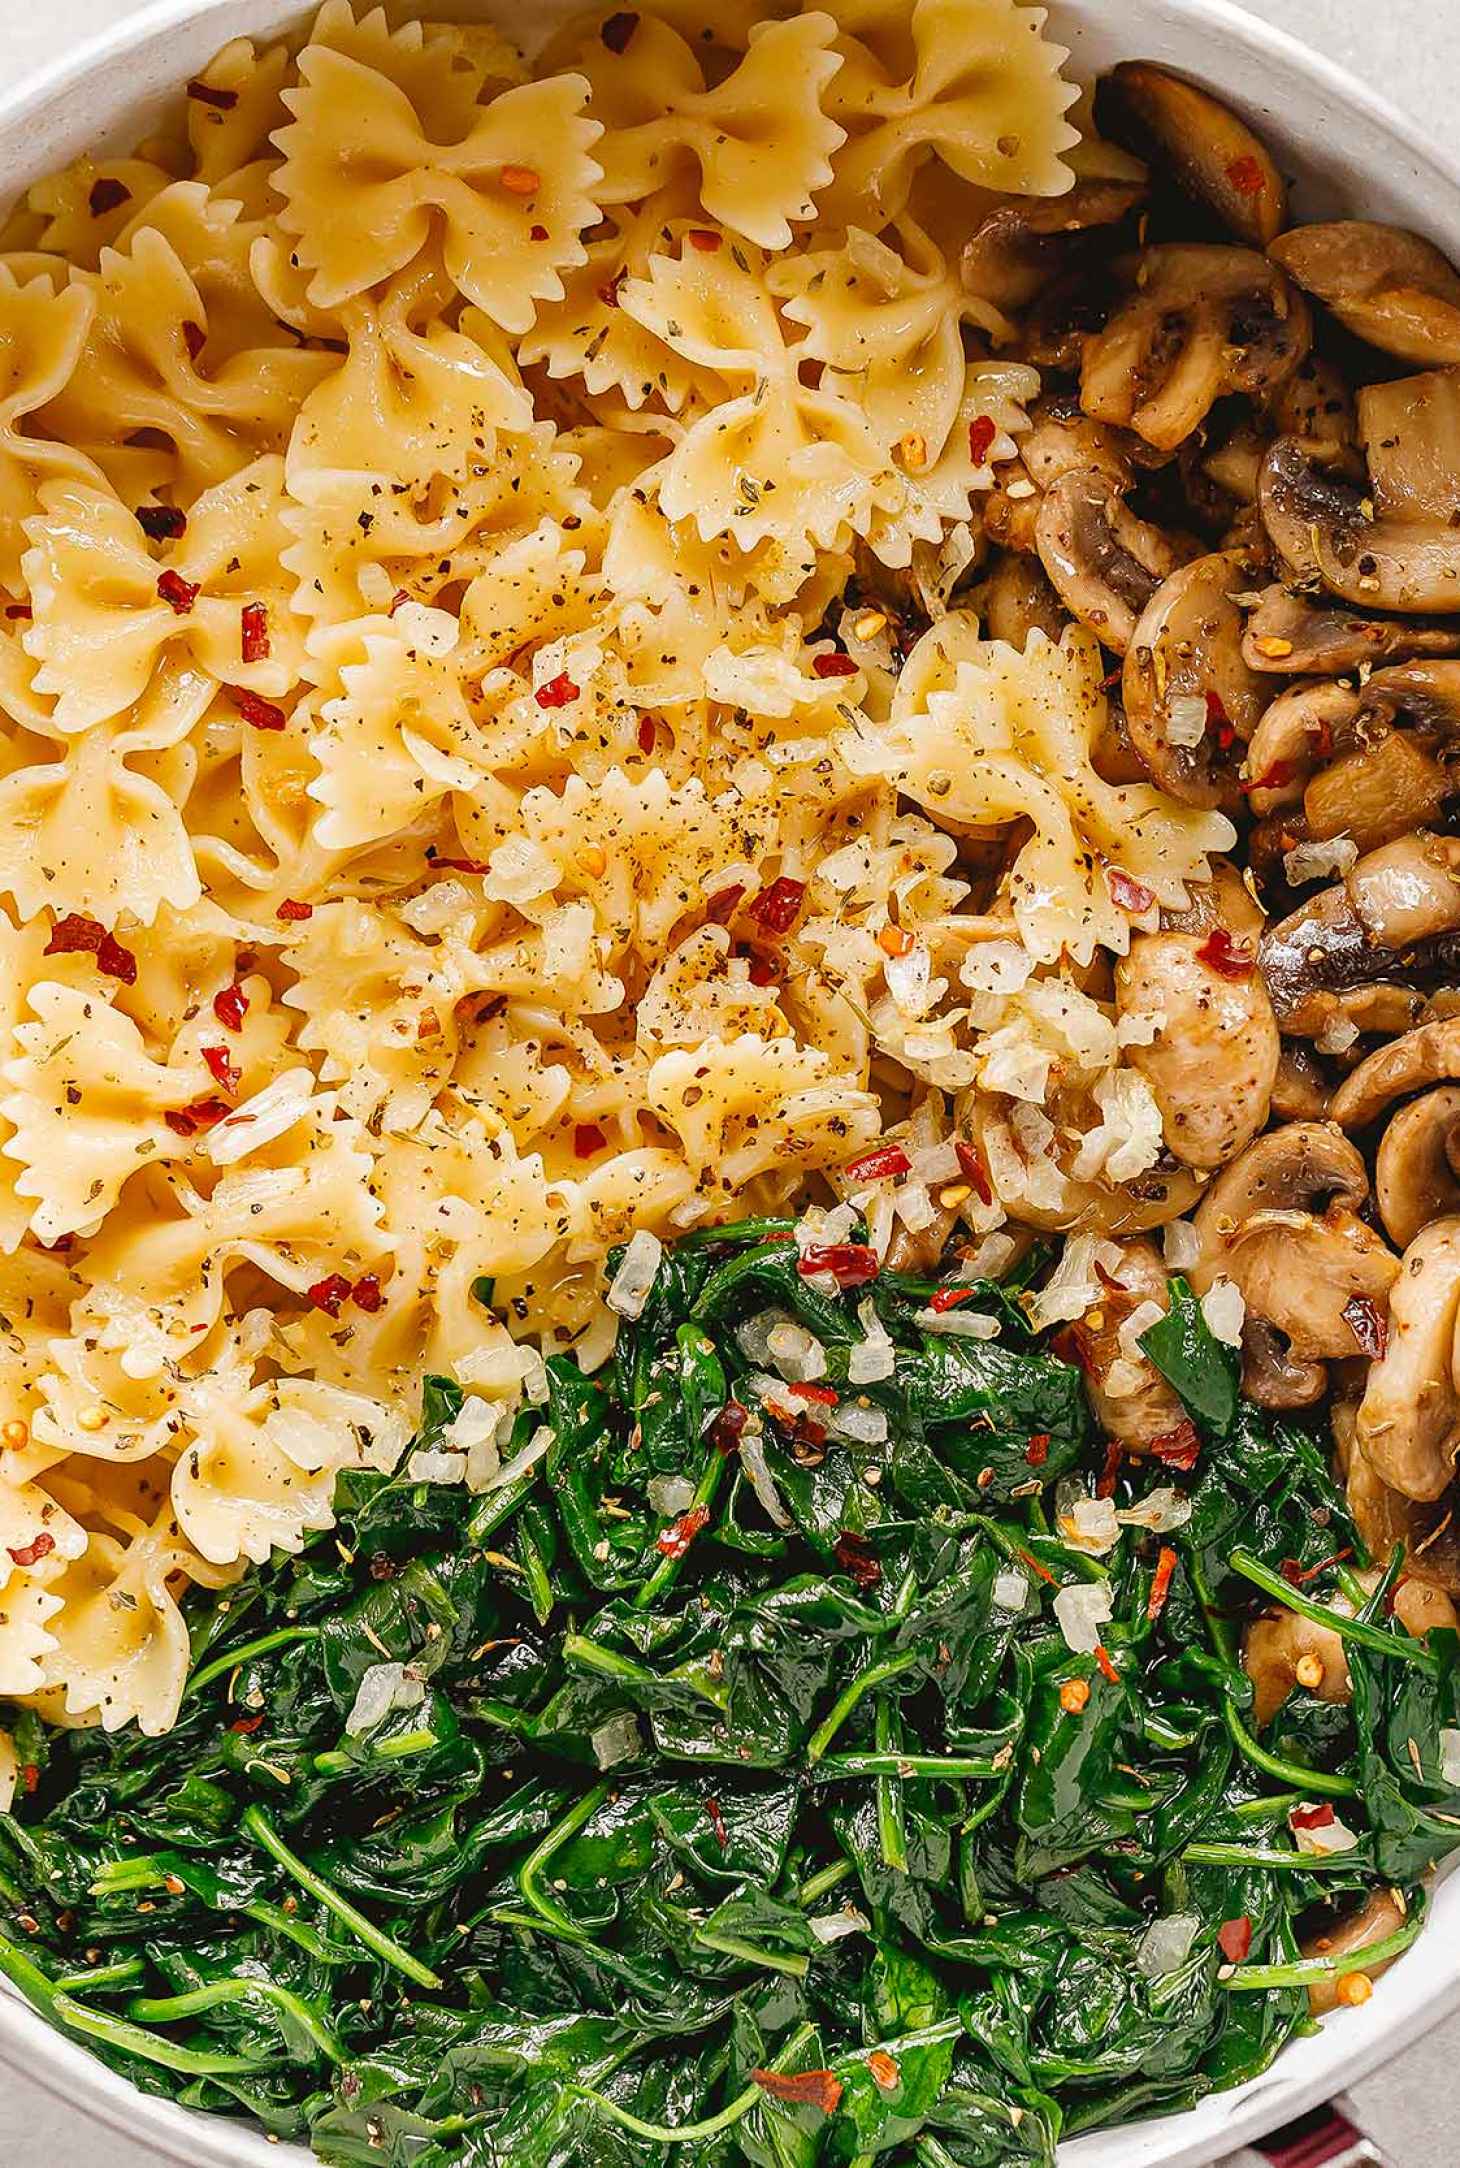 Parmesan Spinach Mushroom Pasta Skillet - #recipe by #eatwell101 - https://www.eatwell101.com/parmesan-spinach-mushroom-pasta-skillet-recipe